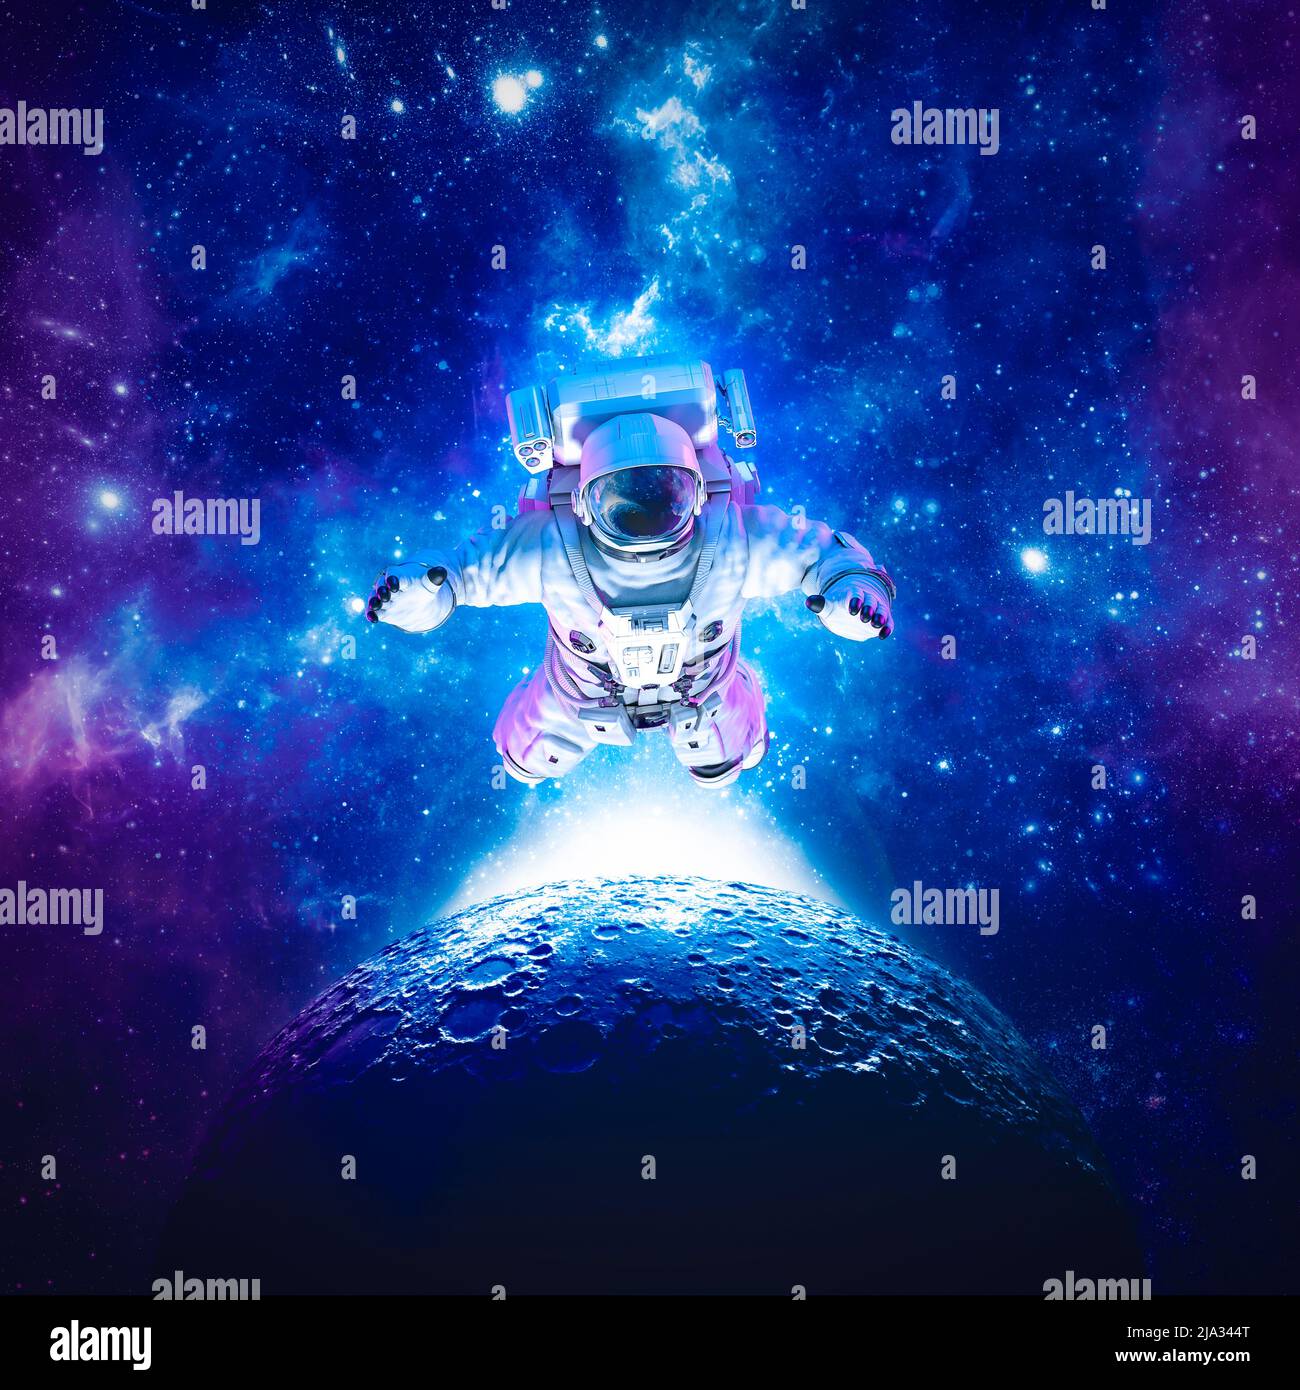 Astronaut schwebt über dem Mond - 3D Abbildung der Science-Fiction-Raum geeignet Figur unter den Sternen im Weltraum Stockfoto